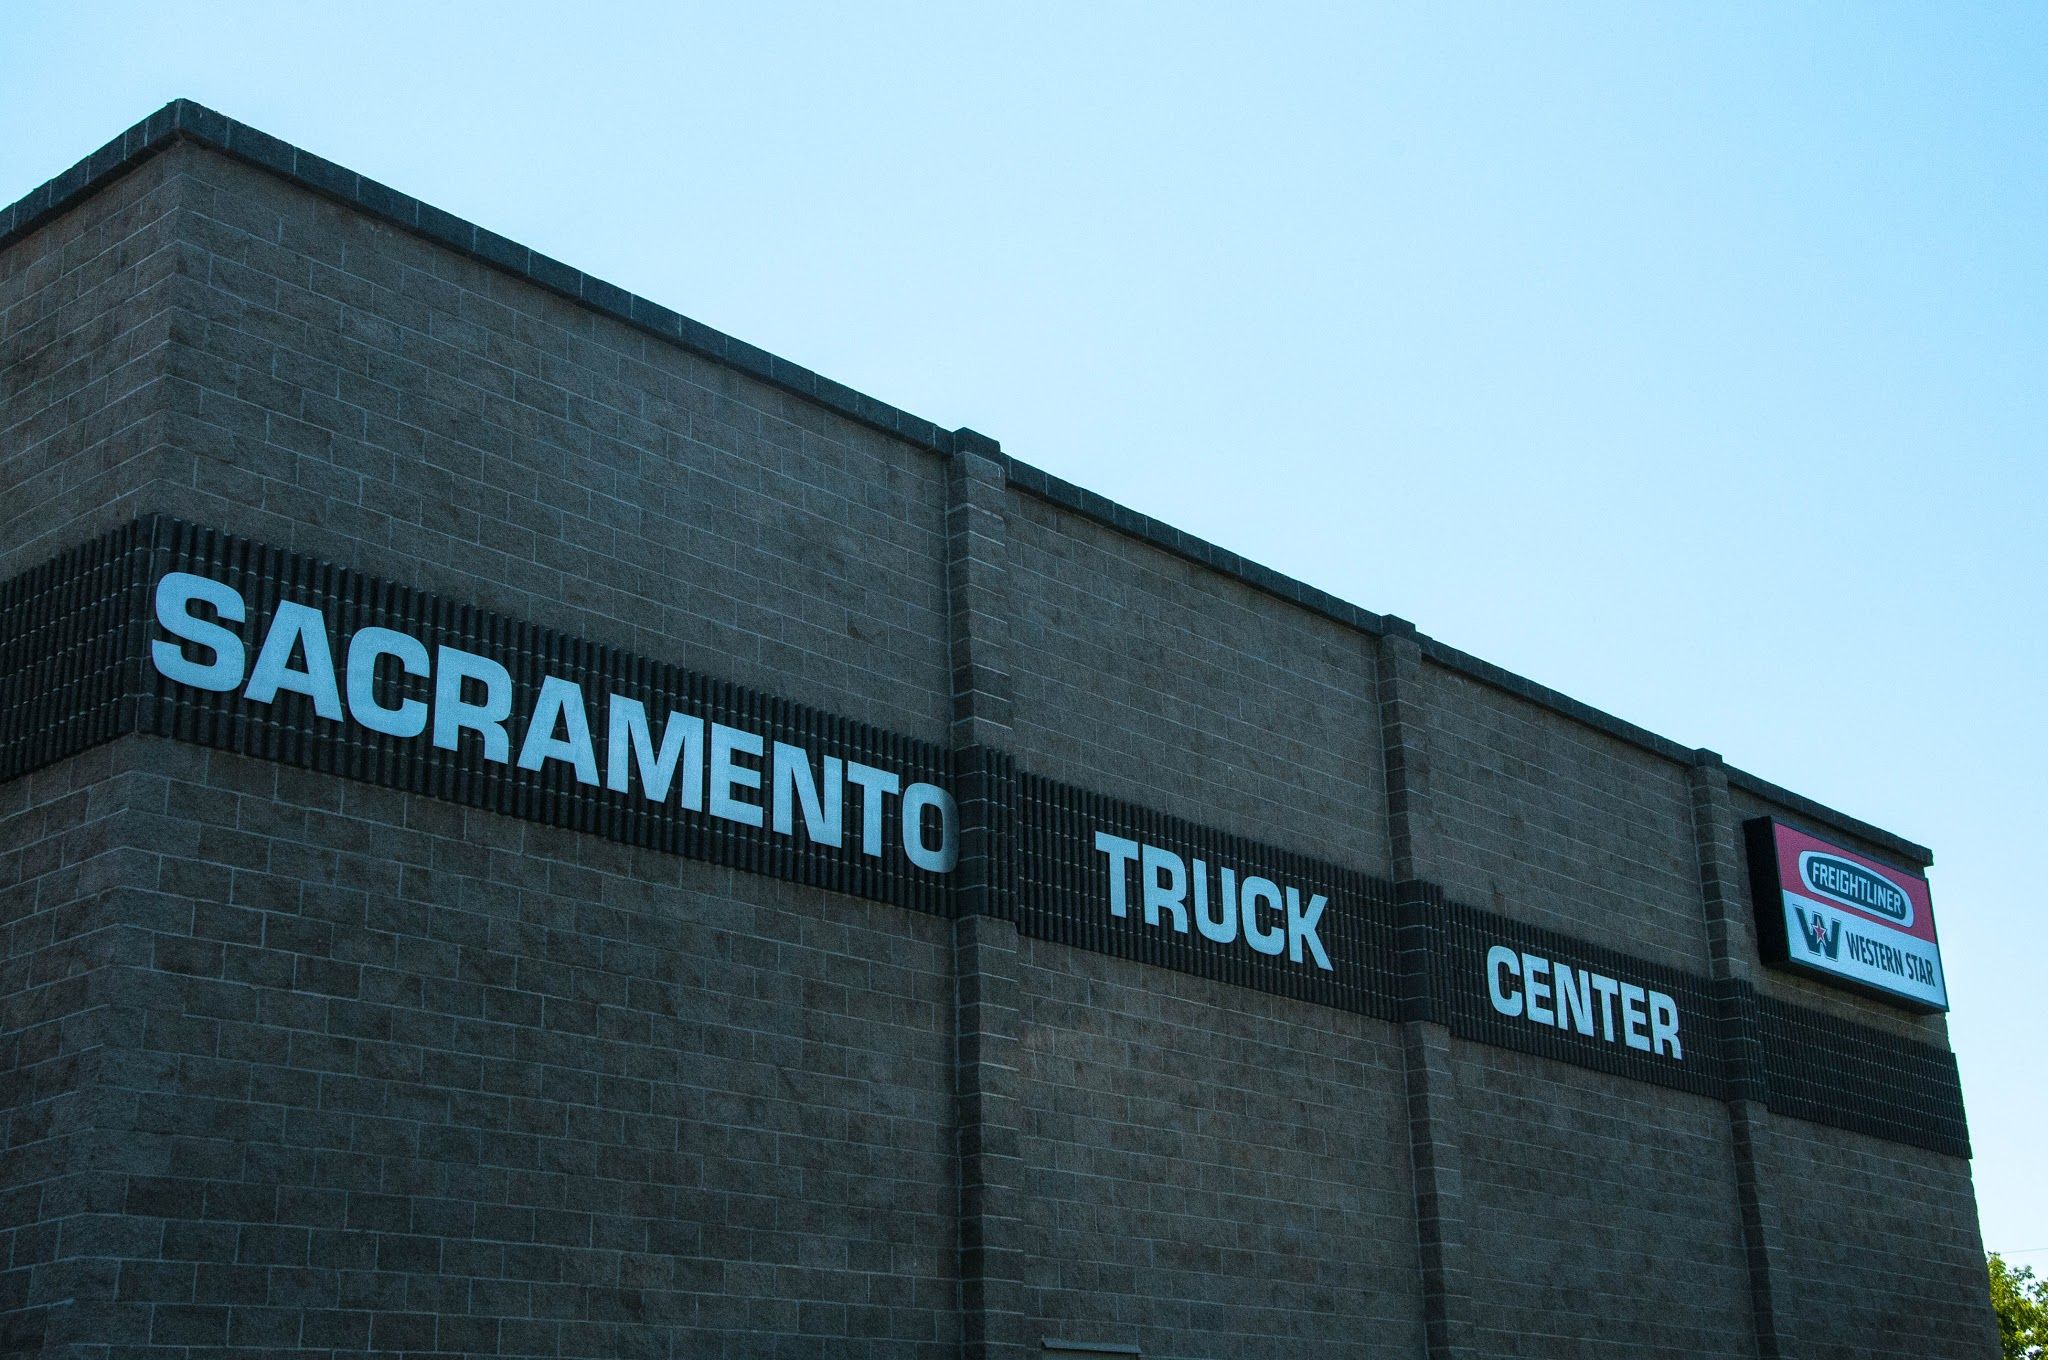 Sacramento Truck Center